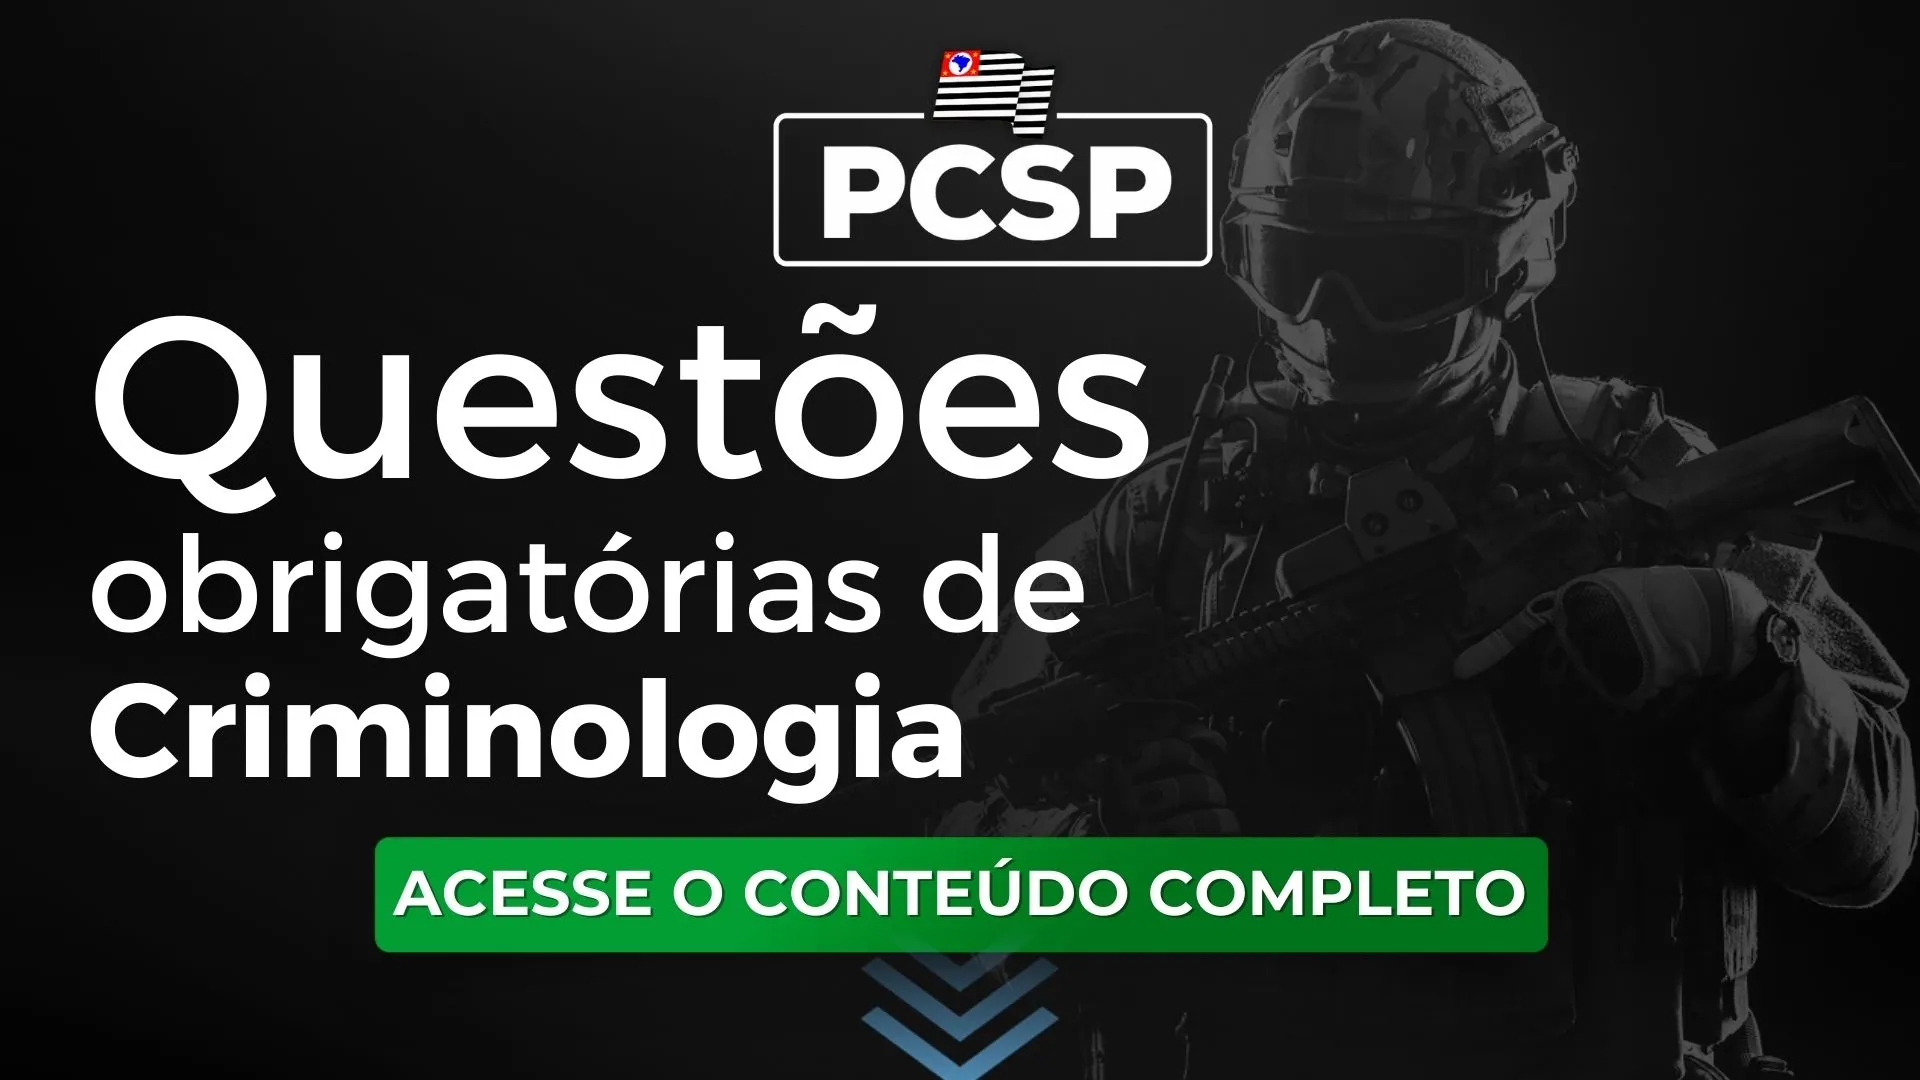 PCSP: Questões obrigatórias de Criminologia para o concurso